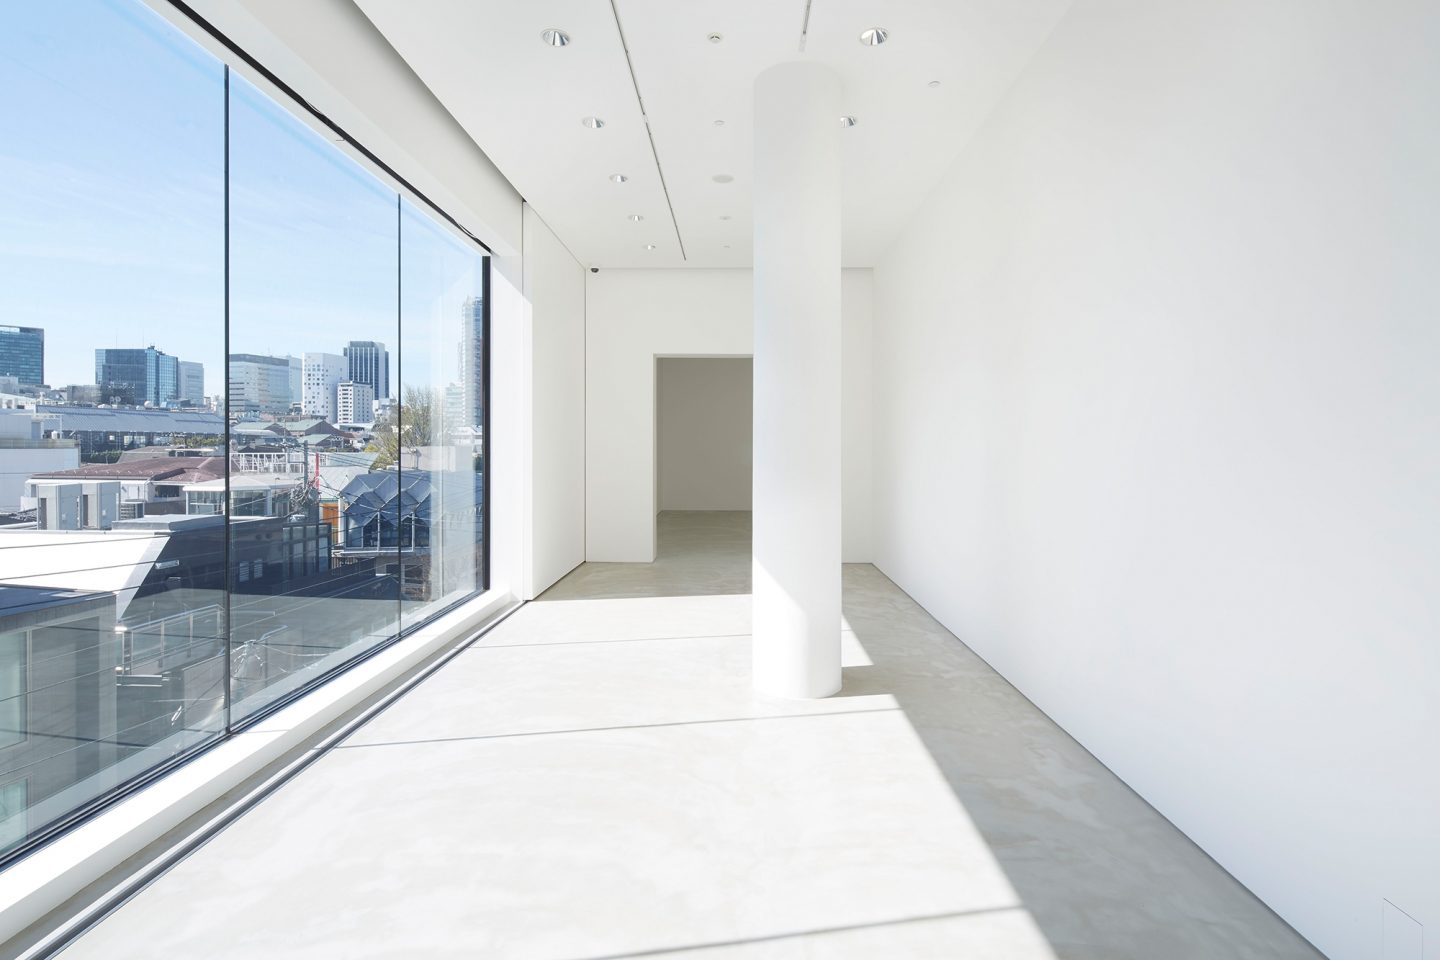 Gyre Gallery, Tokyo, JP. Hildebrand Studios AG, Büro für Architektur und Städtebau, Zürich